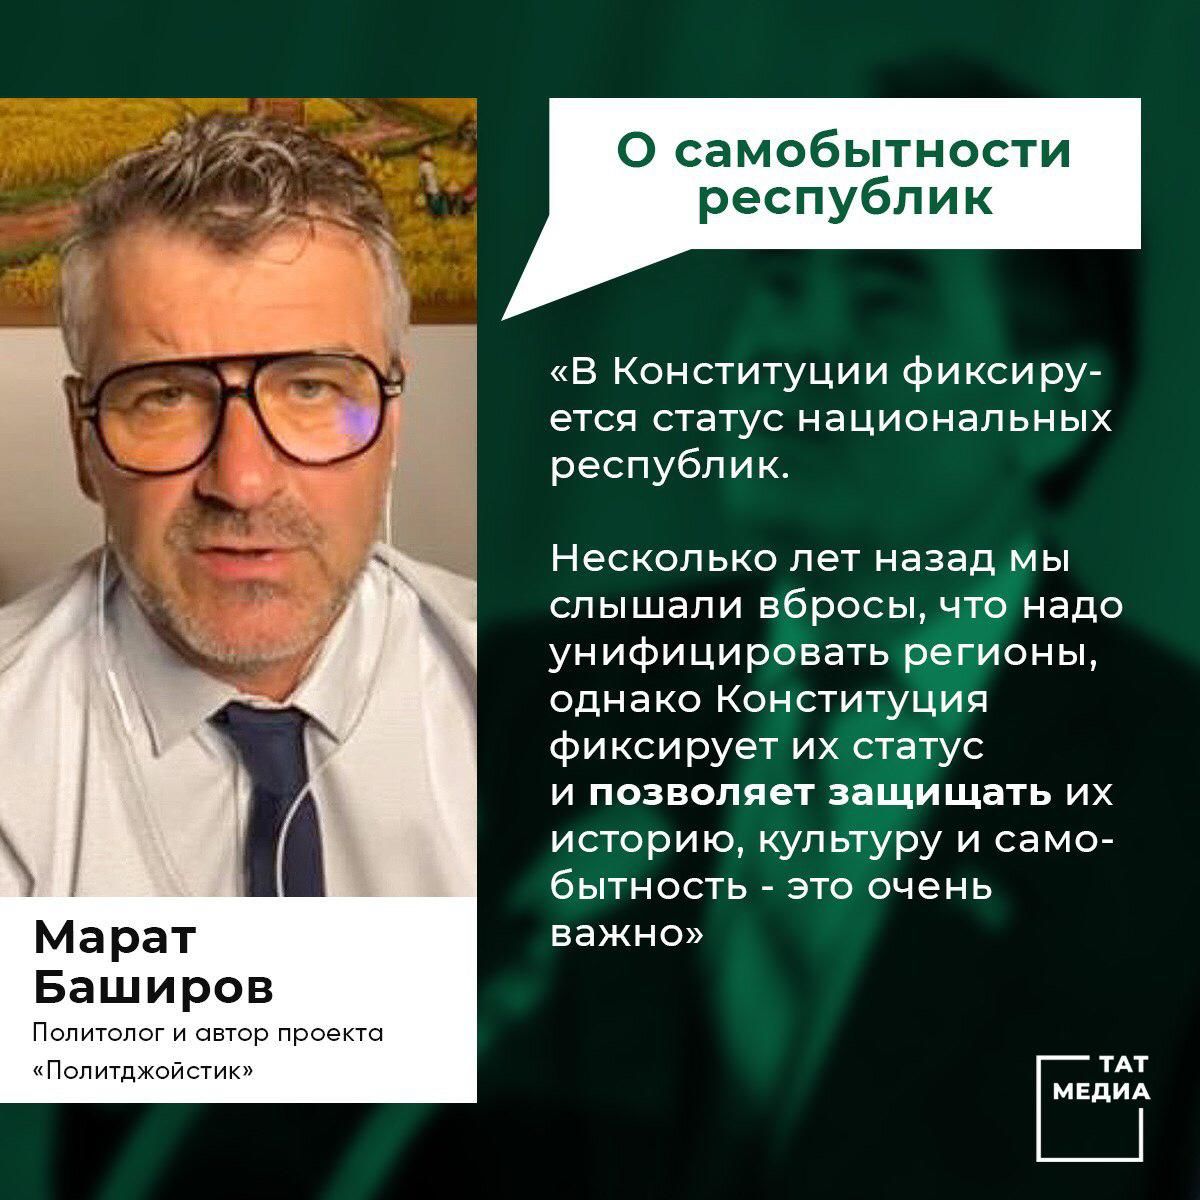 Марат Баширов высказал свое мнение по поводу обновлений в Основном законе